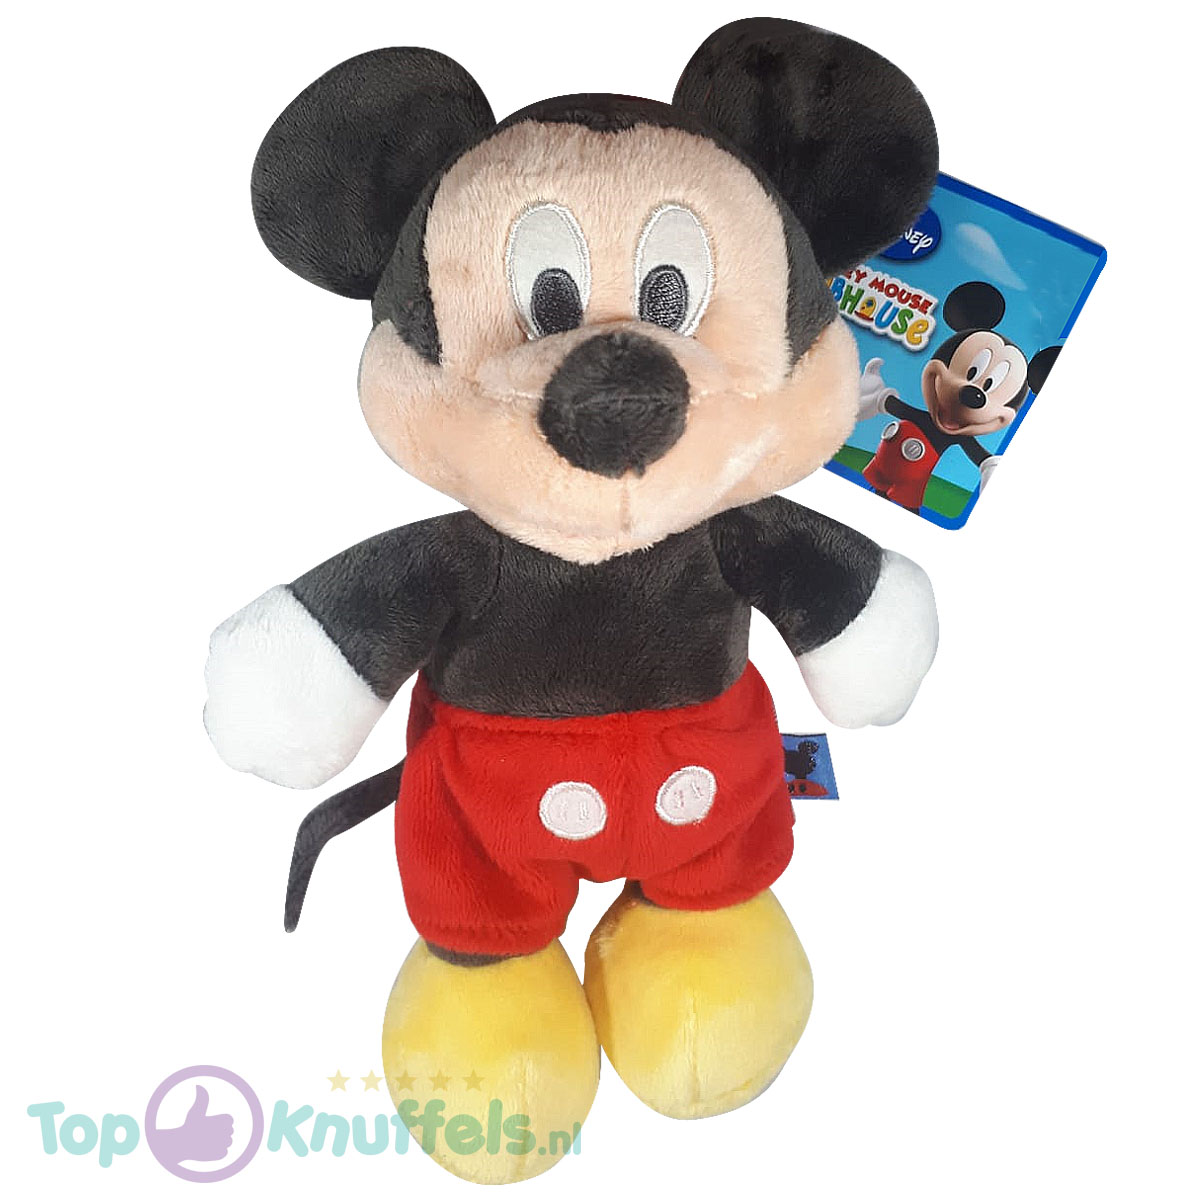 toernooi kiezen Aandringen Mickey Mouse pluche knuffel 24cm - Disney Clubhouse kopen?